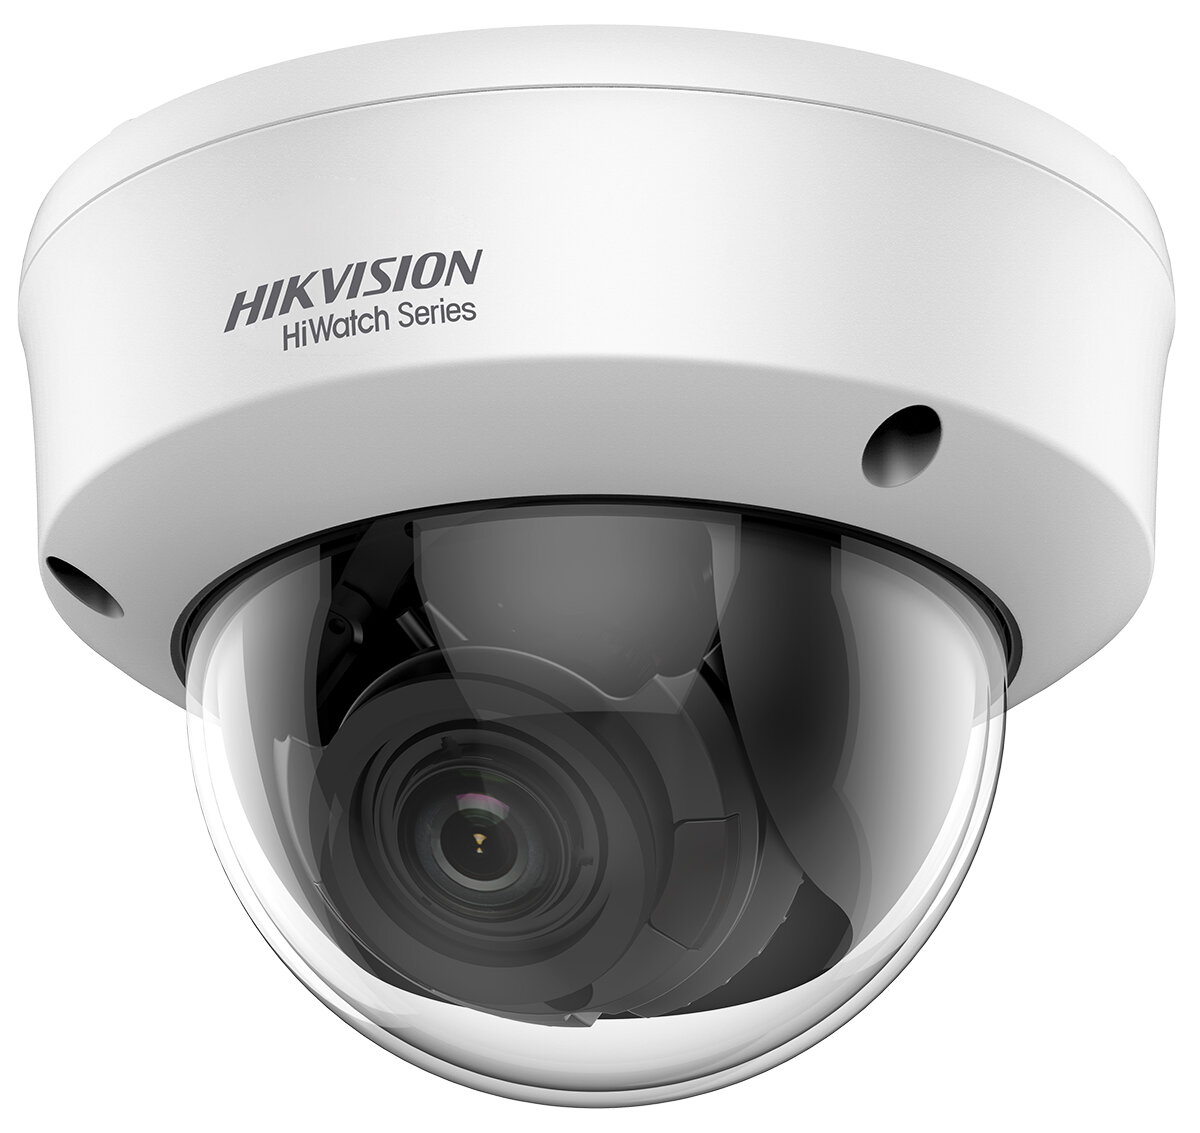 Kamera Hikvision Hiwatch HWT-T340-VF